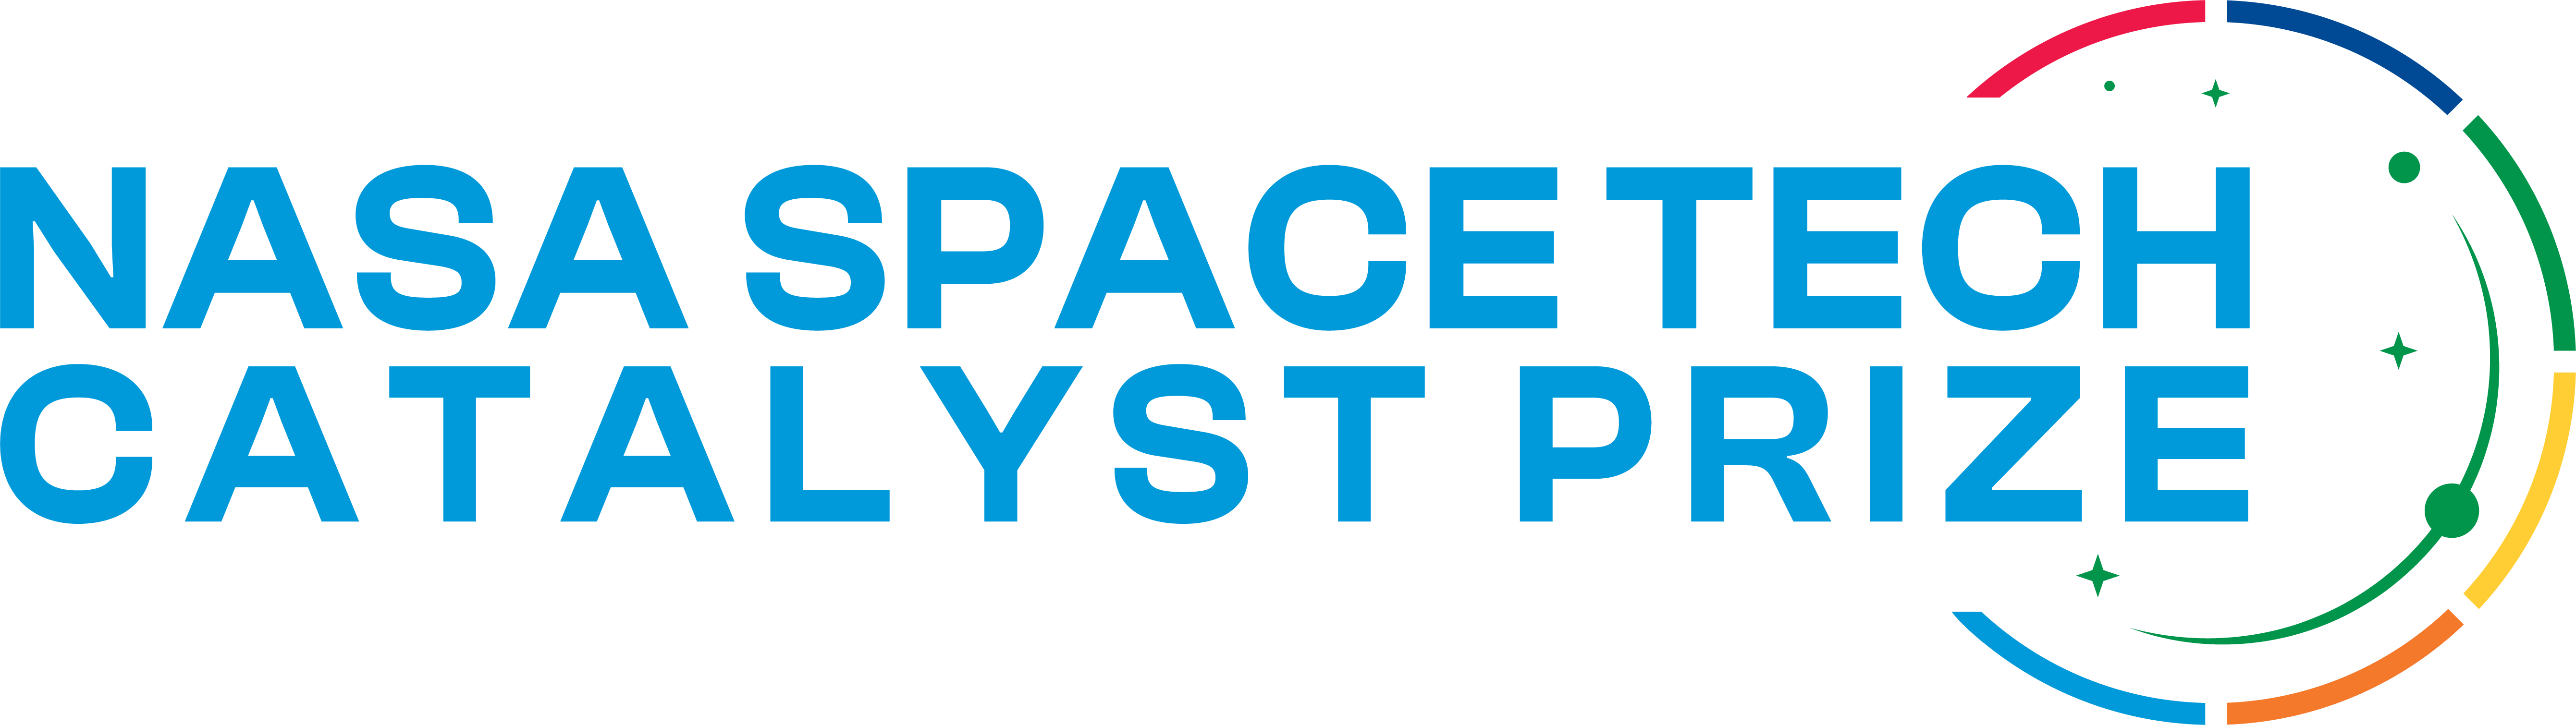 Space Tech Catalyst Prize - NASA